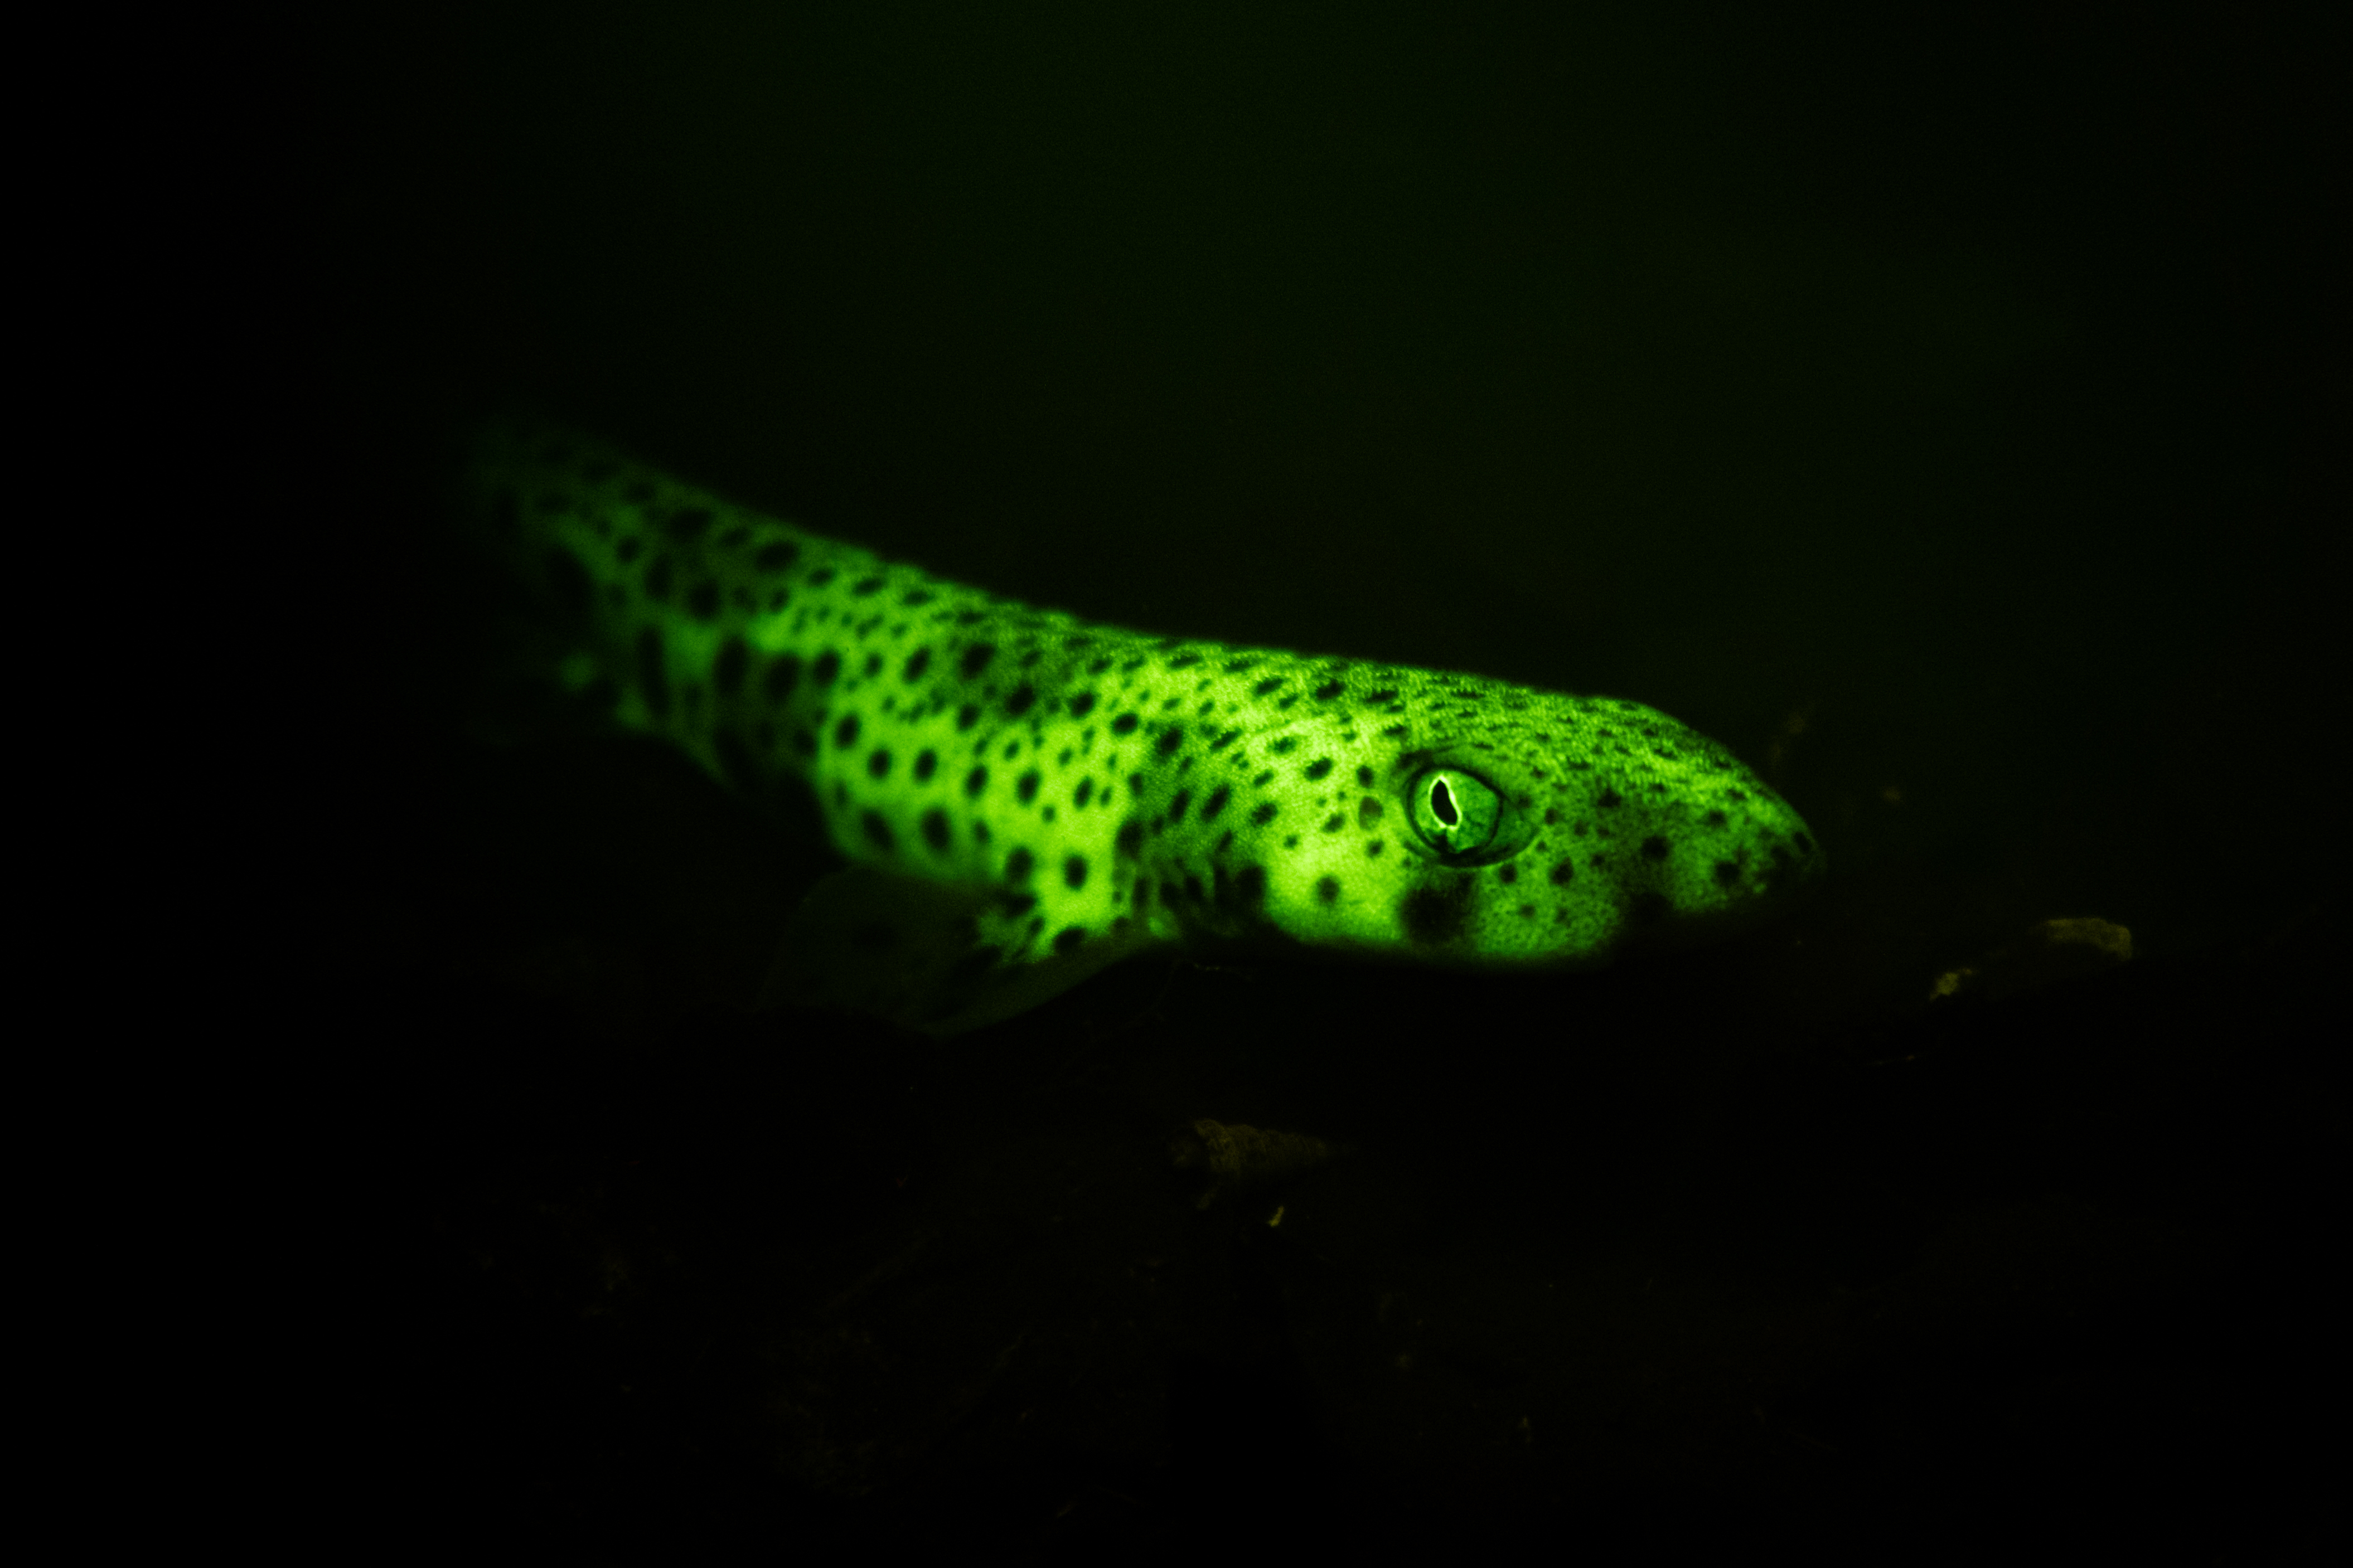 Tubarão-gato-de-manchas-pequenas biofluorescente (Scyliorhinus canicula)